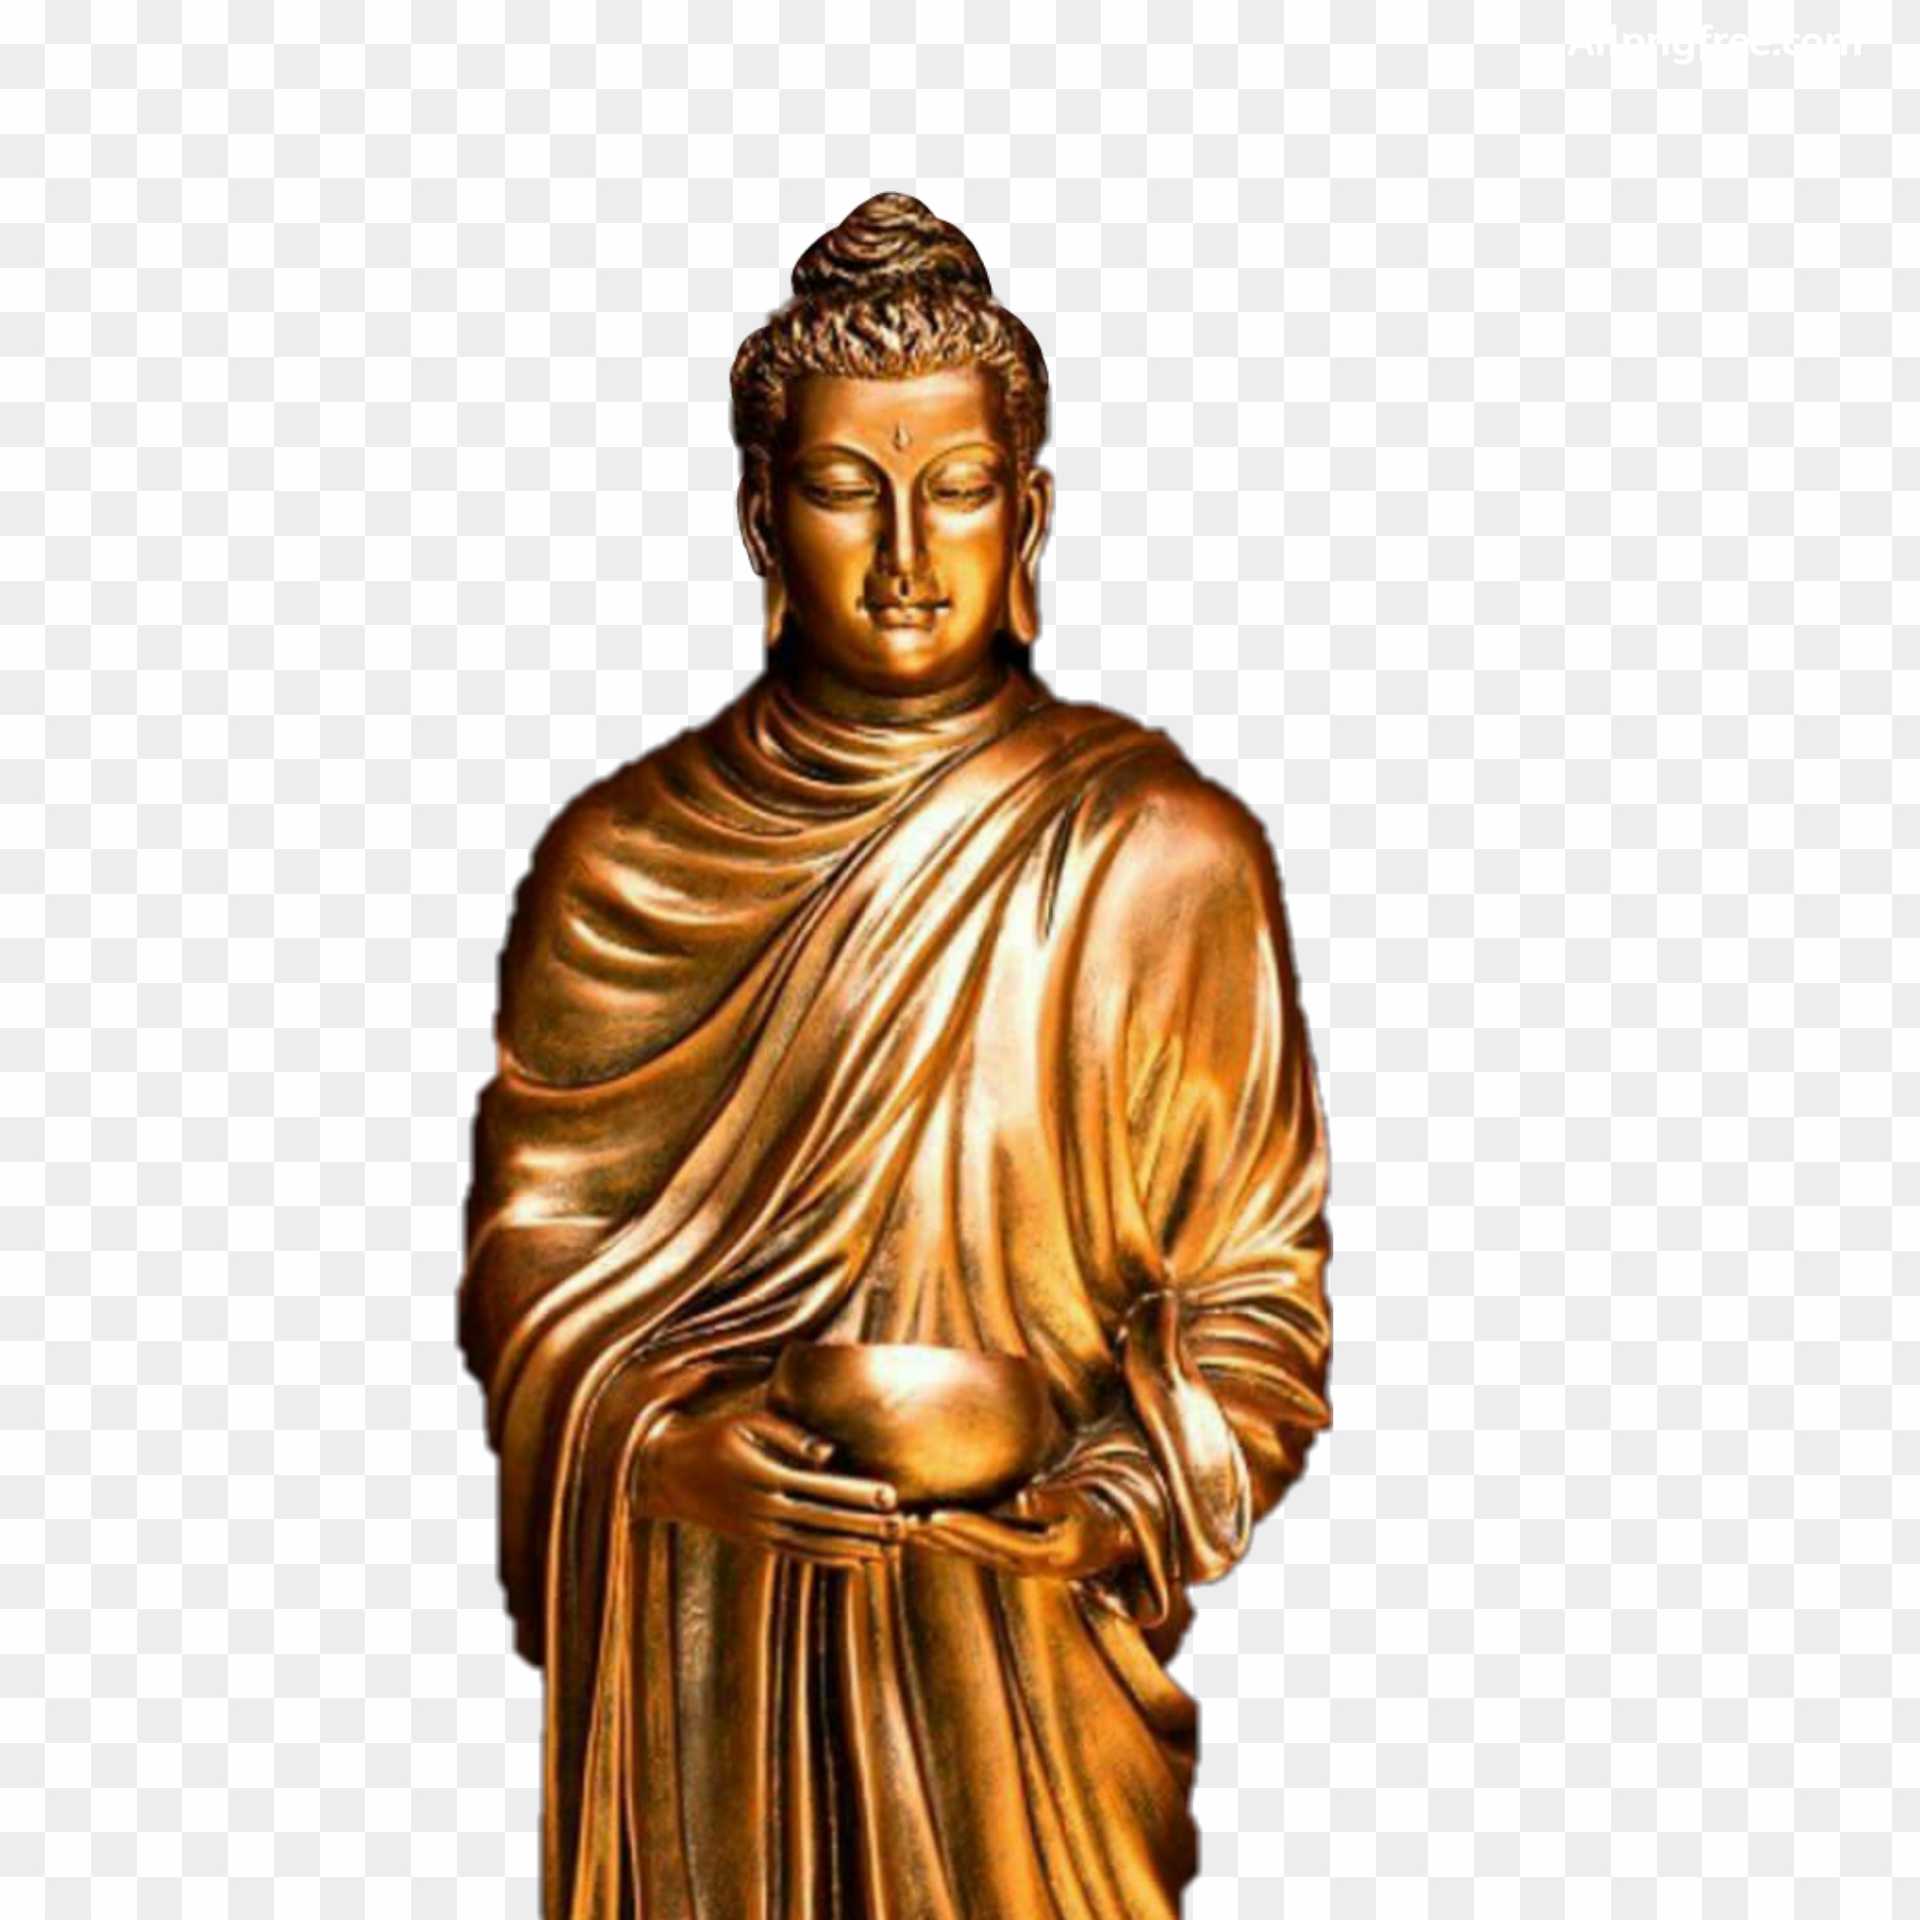 Gautama Buddha png images download 